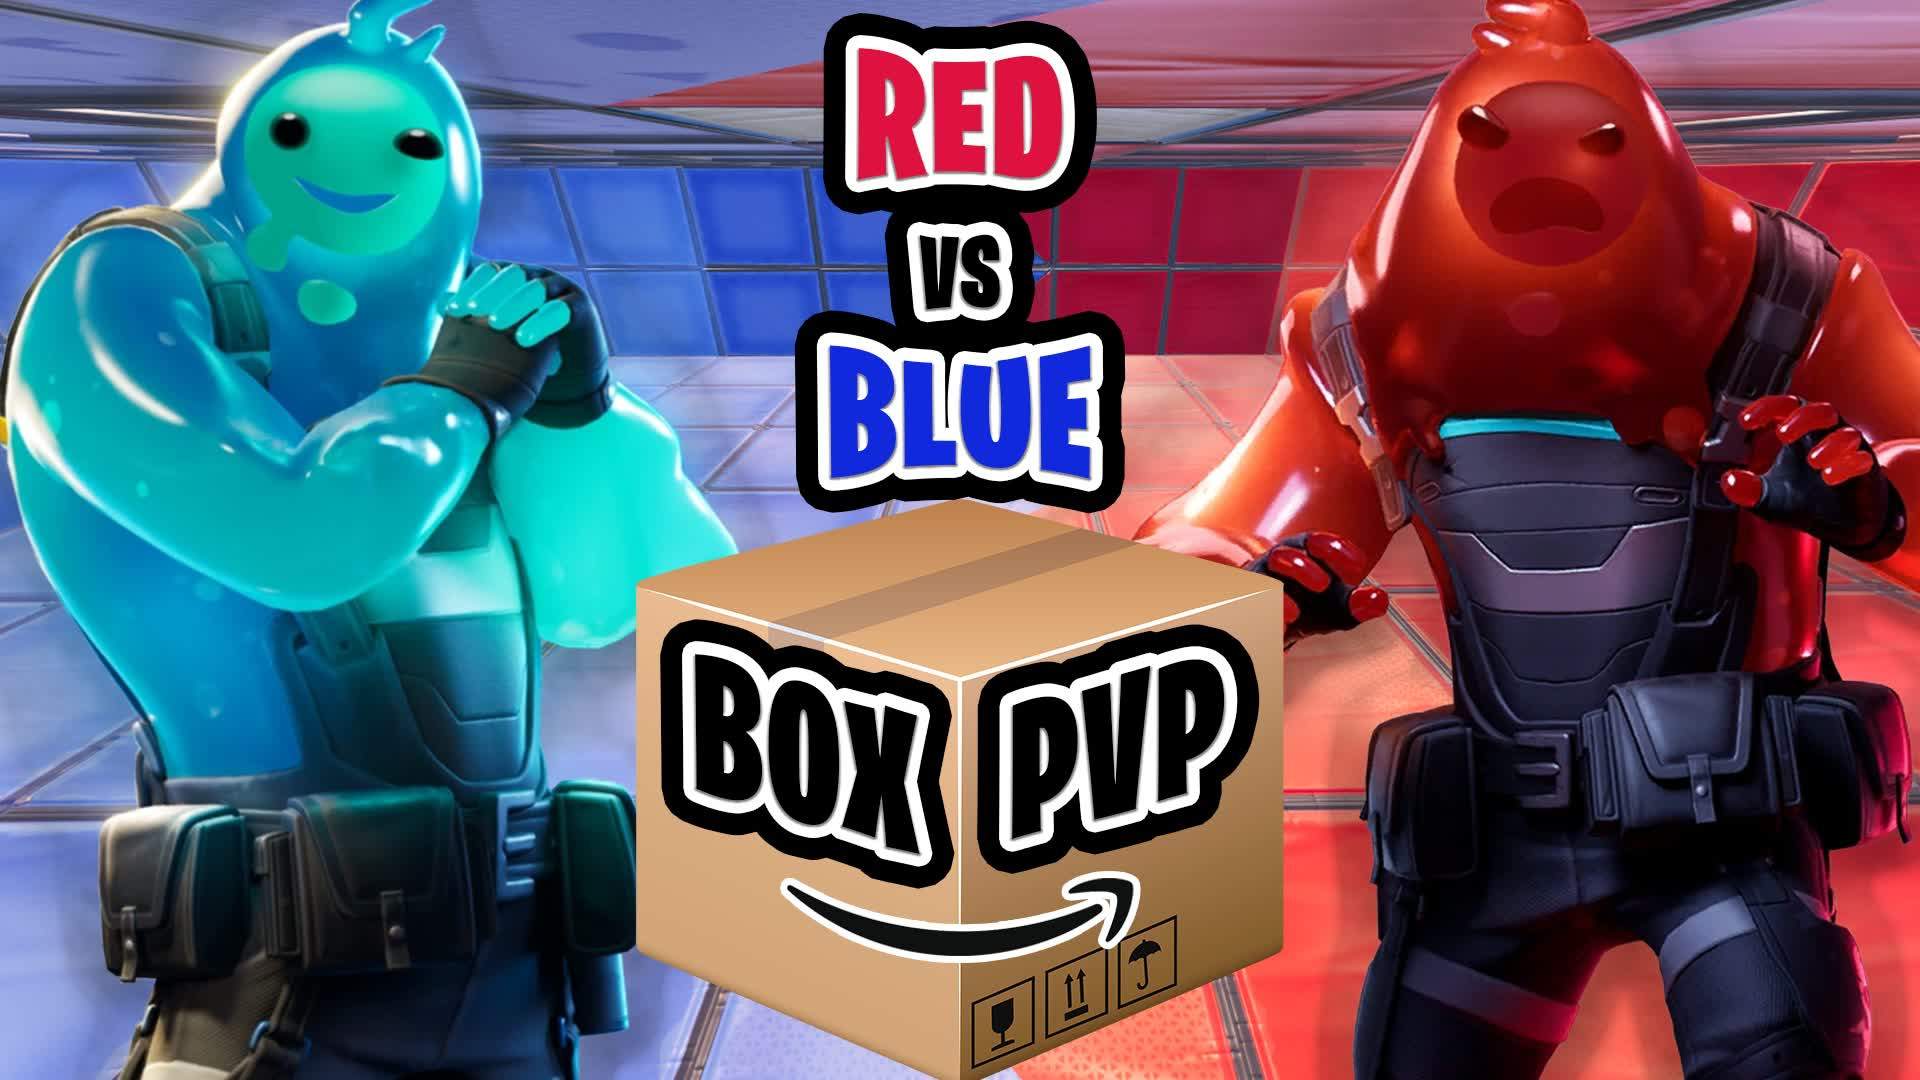 Red VS Blue BOX PVP